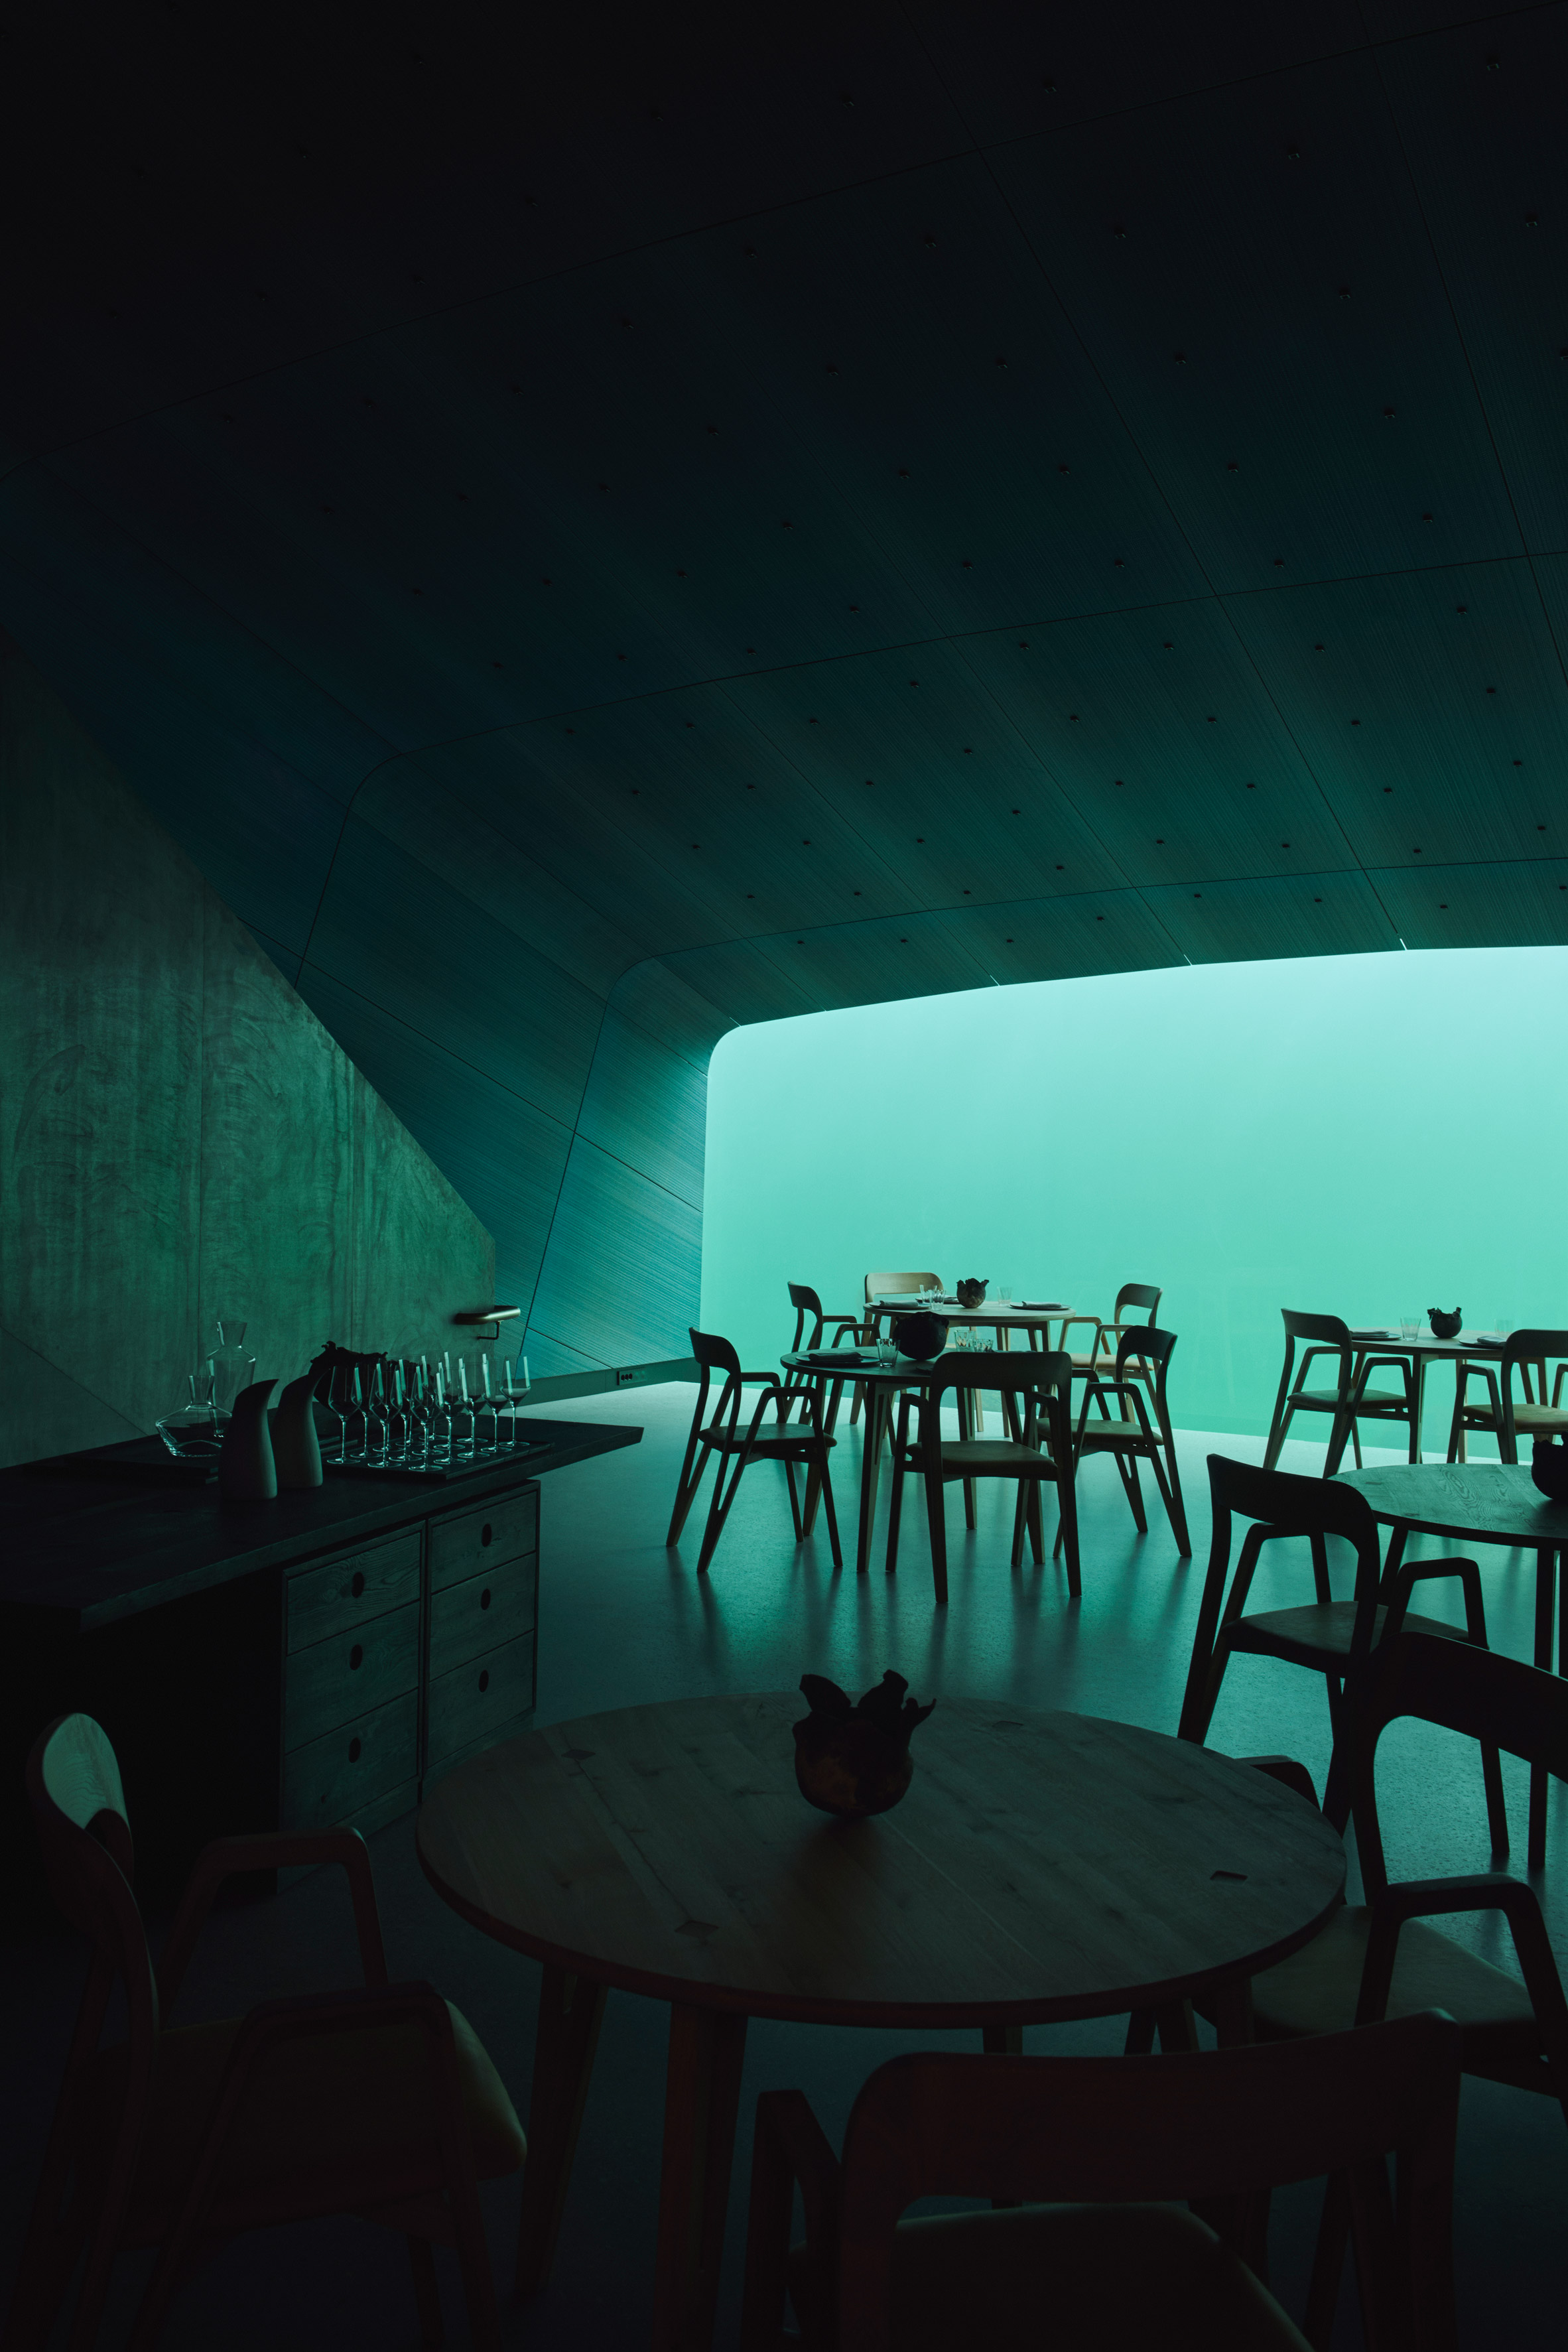 Europe's first underwater restaurant, Under, by Snohetta in Båly, south Norway